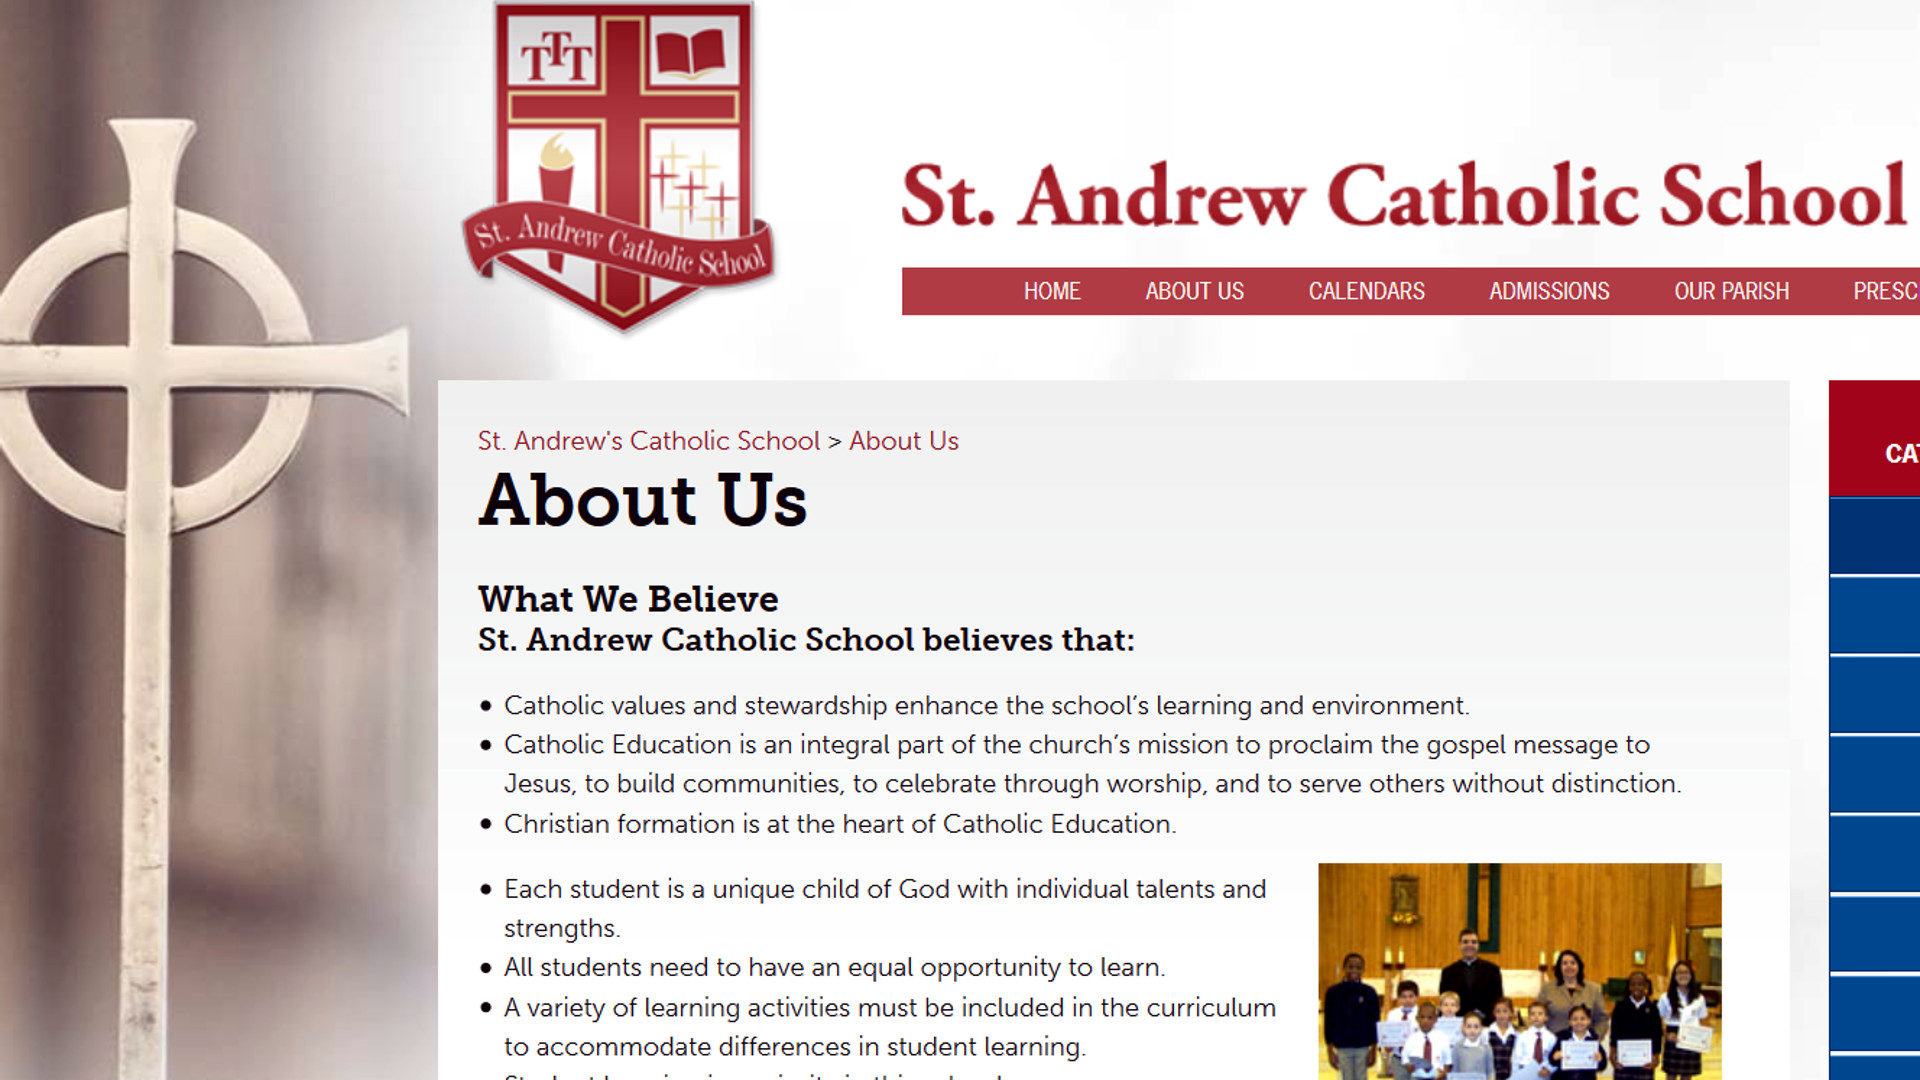 St. Andrew's Catholic School